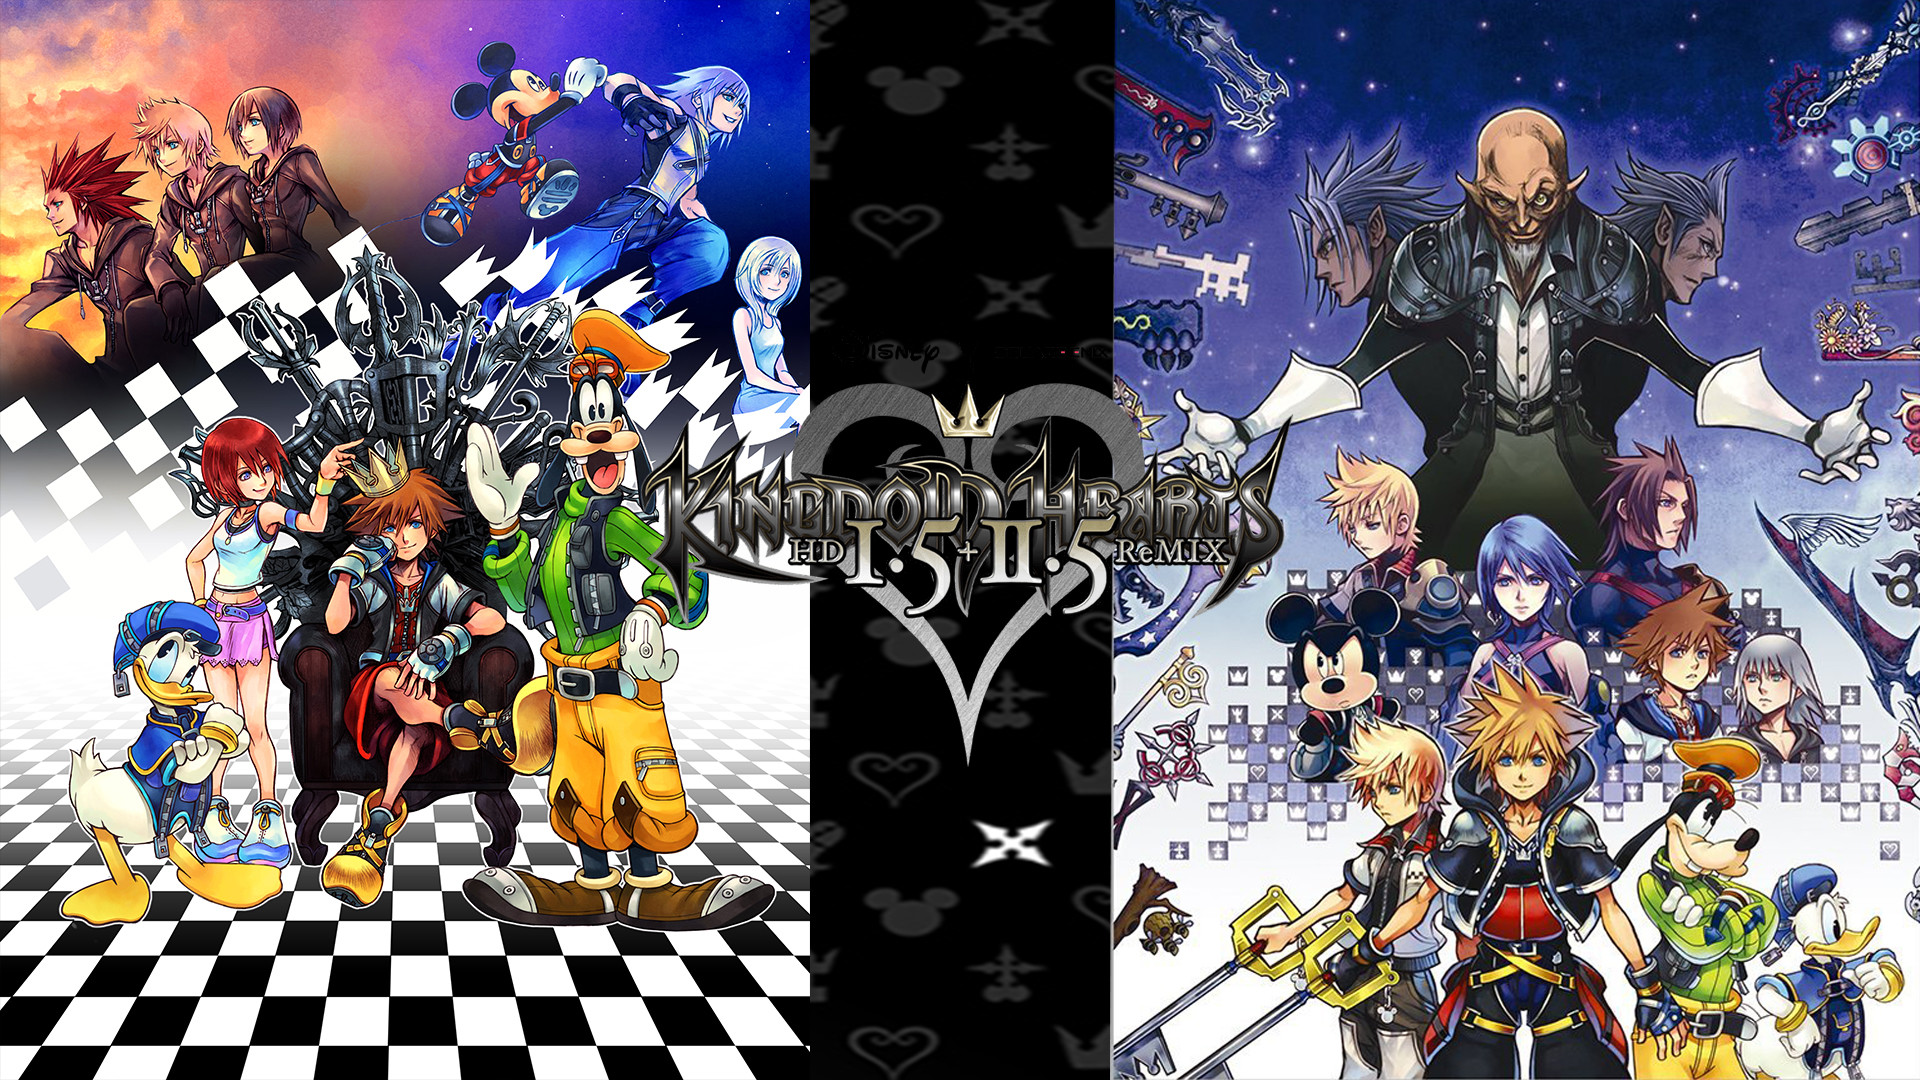 Kingdom Hearts 1 5 2 5 Hd Remix Wallpaper By The Dark Mamba 995 1920x1080